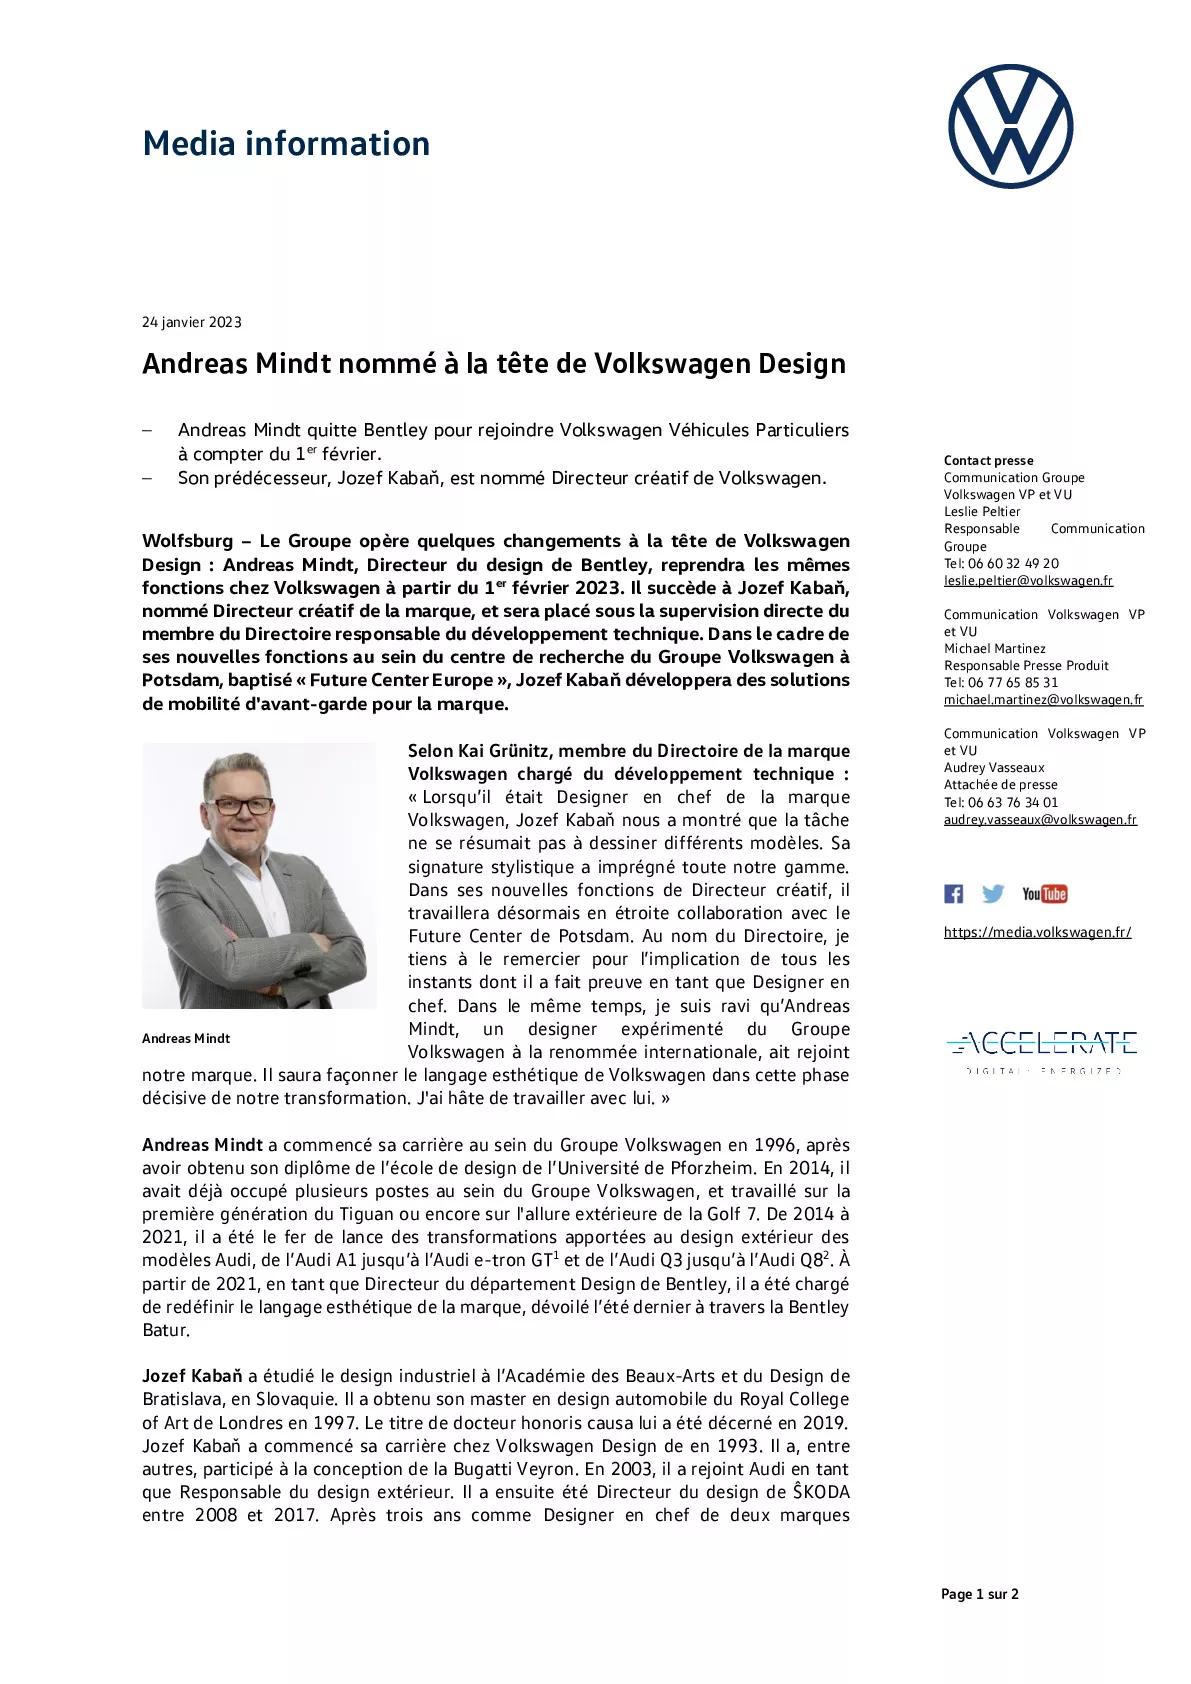 Communiqué de presse - Andreas Mindt nommé à la tête de Volkswagen Design